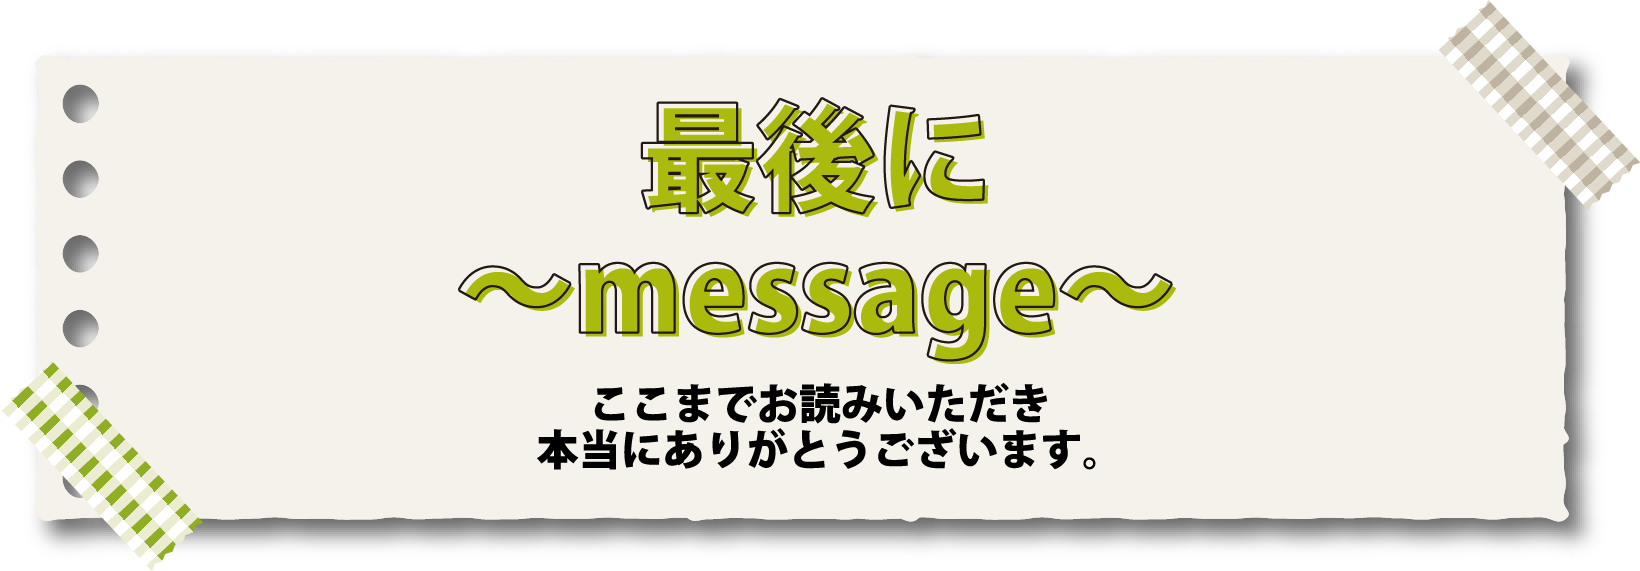 最後に〜message〜ここまでお読みいただき本当にありがとうございます。